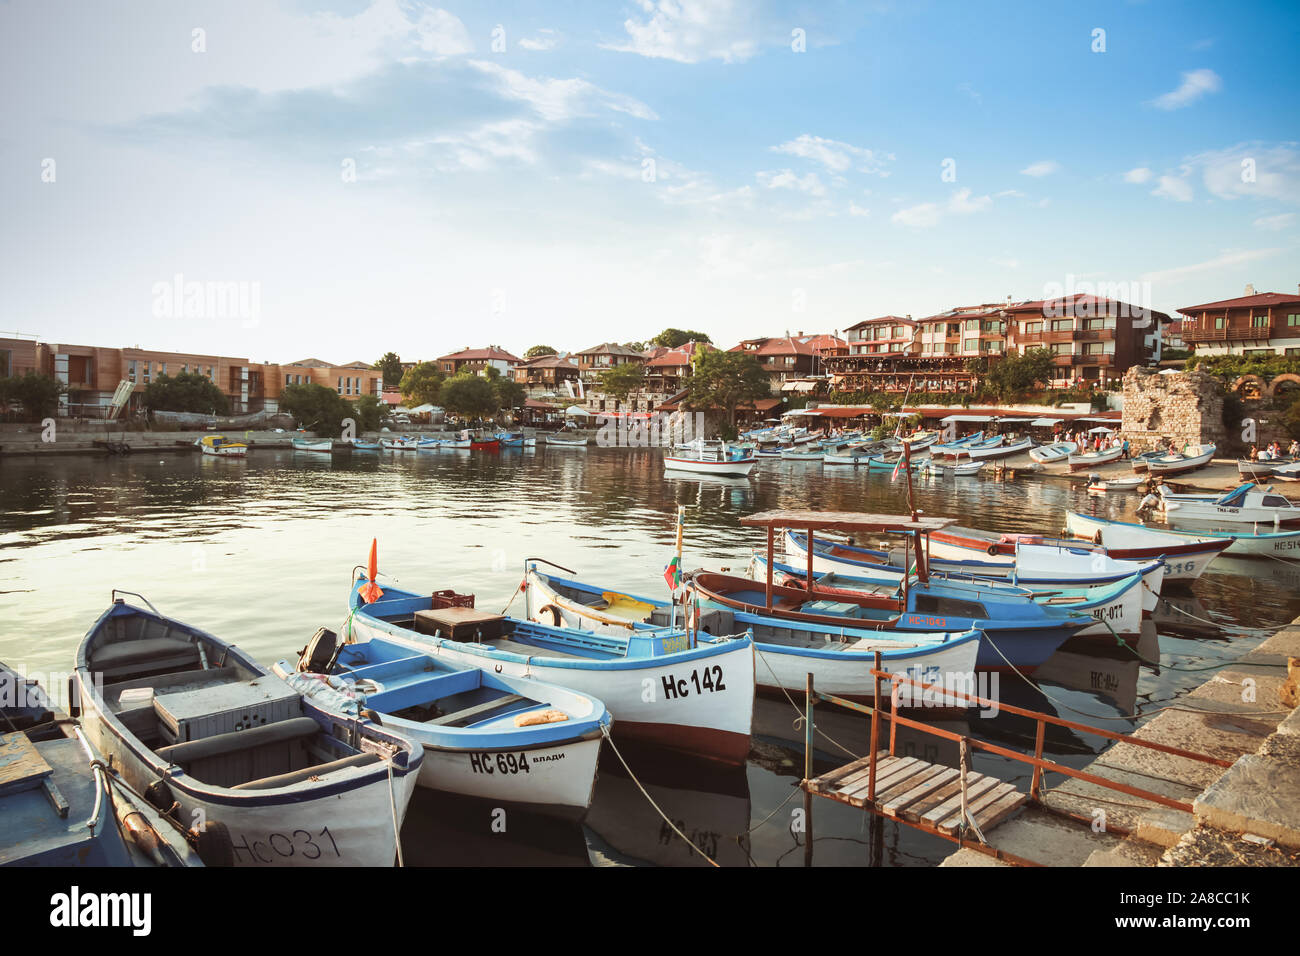 Nessebar, Bulgarie - 20 juillet 2014 : Nessebar paysage avec de petits bateaux de pêche amarrés dans le vieux port Banque D'Images